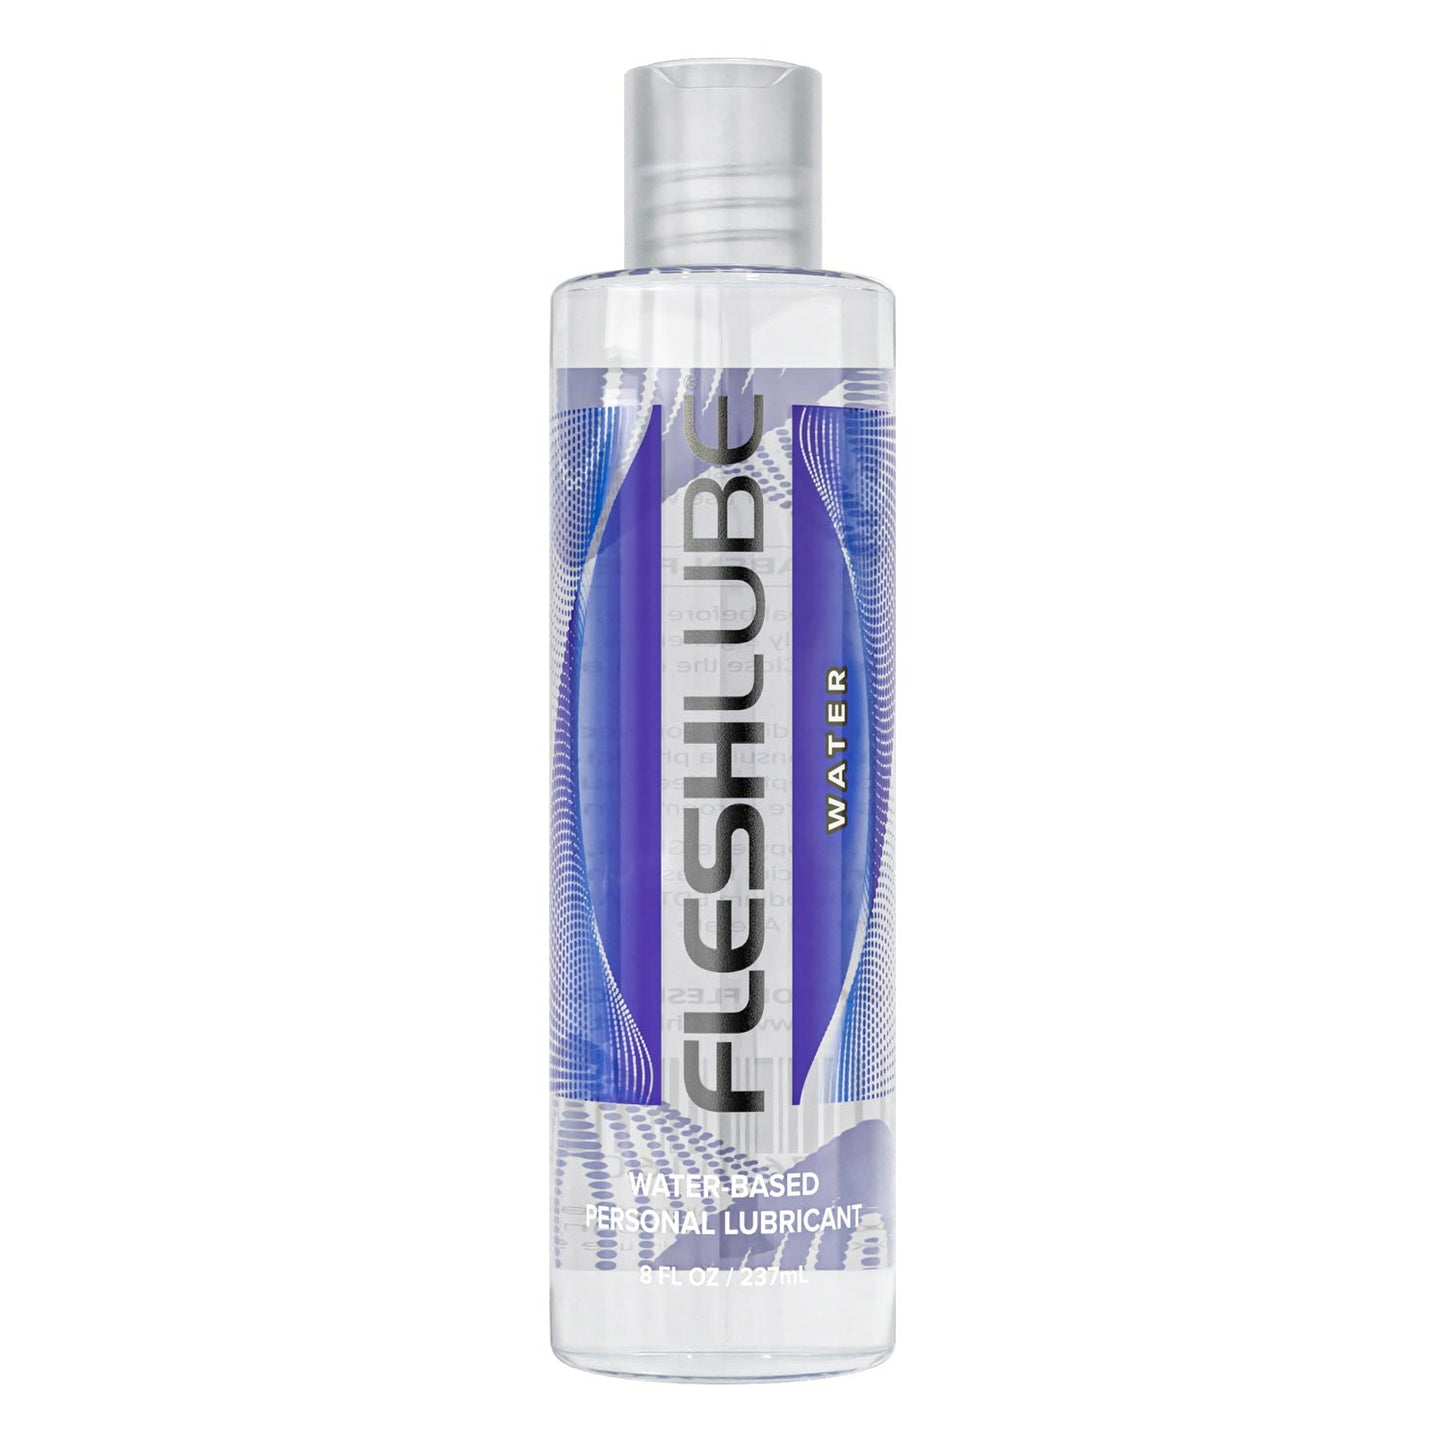 8oz bottle of Fleshlight Lube Water